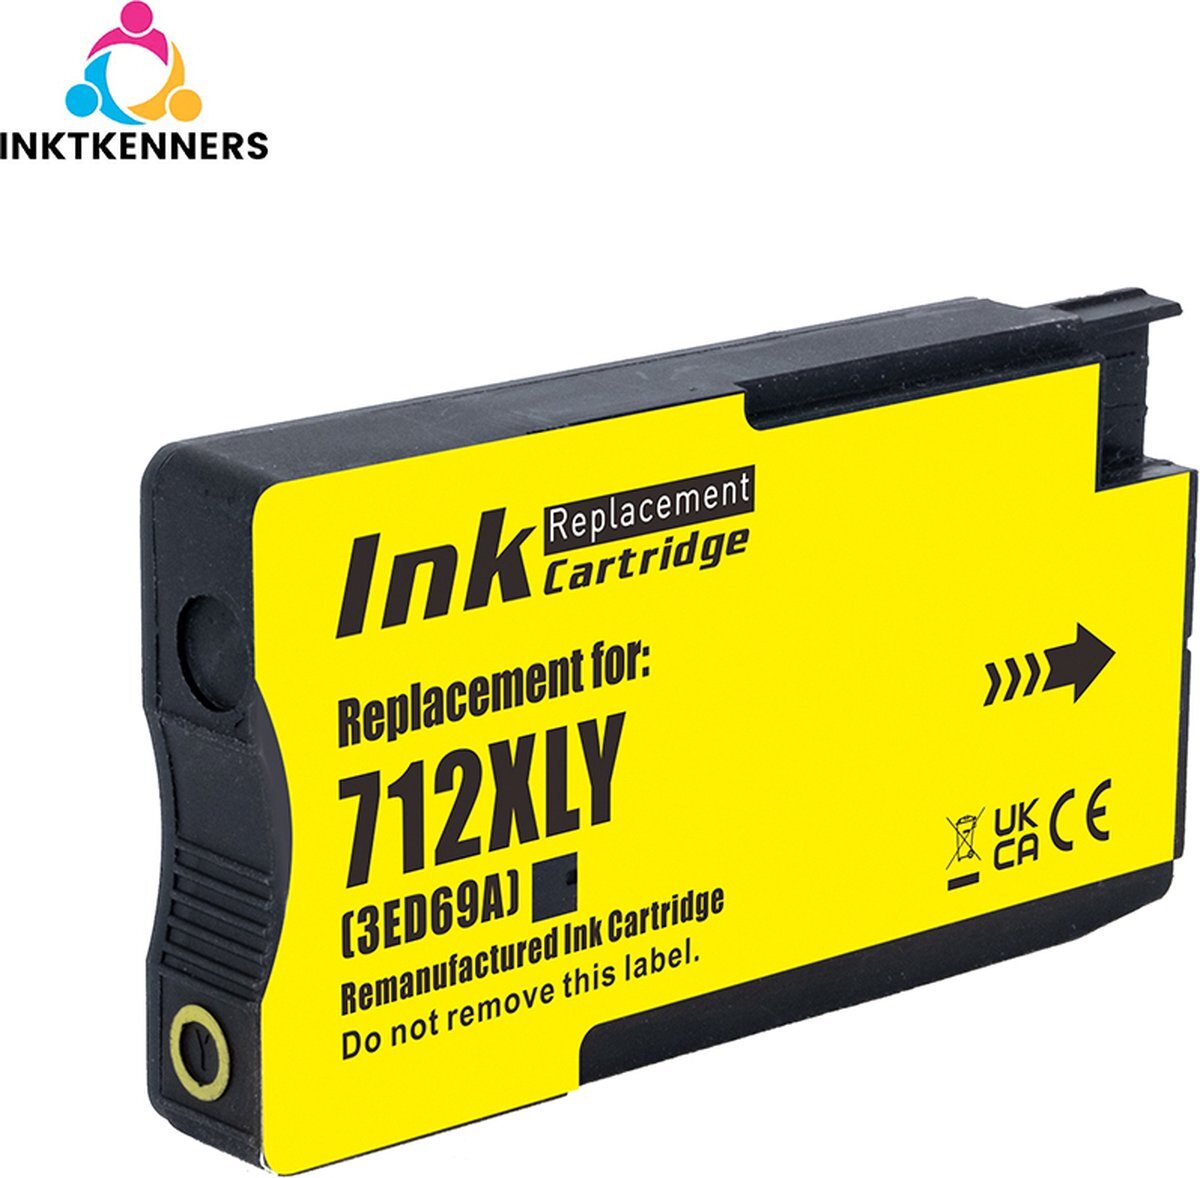 Inktkenners Inktcartridges voor HP 712 - Geel - voor HP DesignJet T210 - T230 - T250 - T630 - T650 Studio